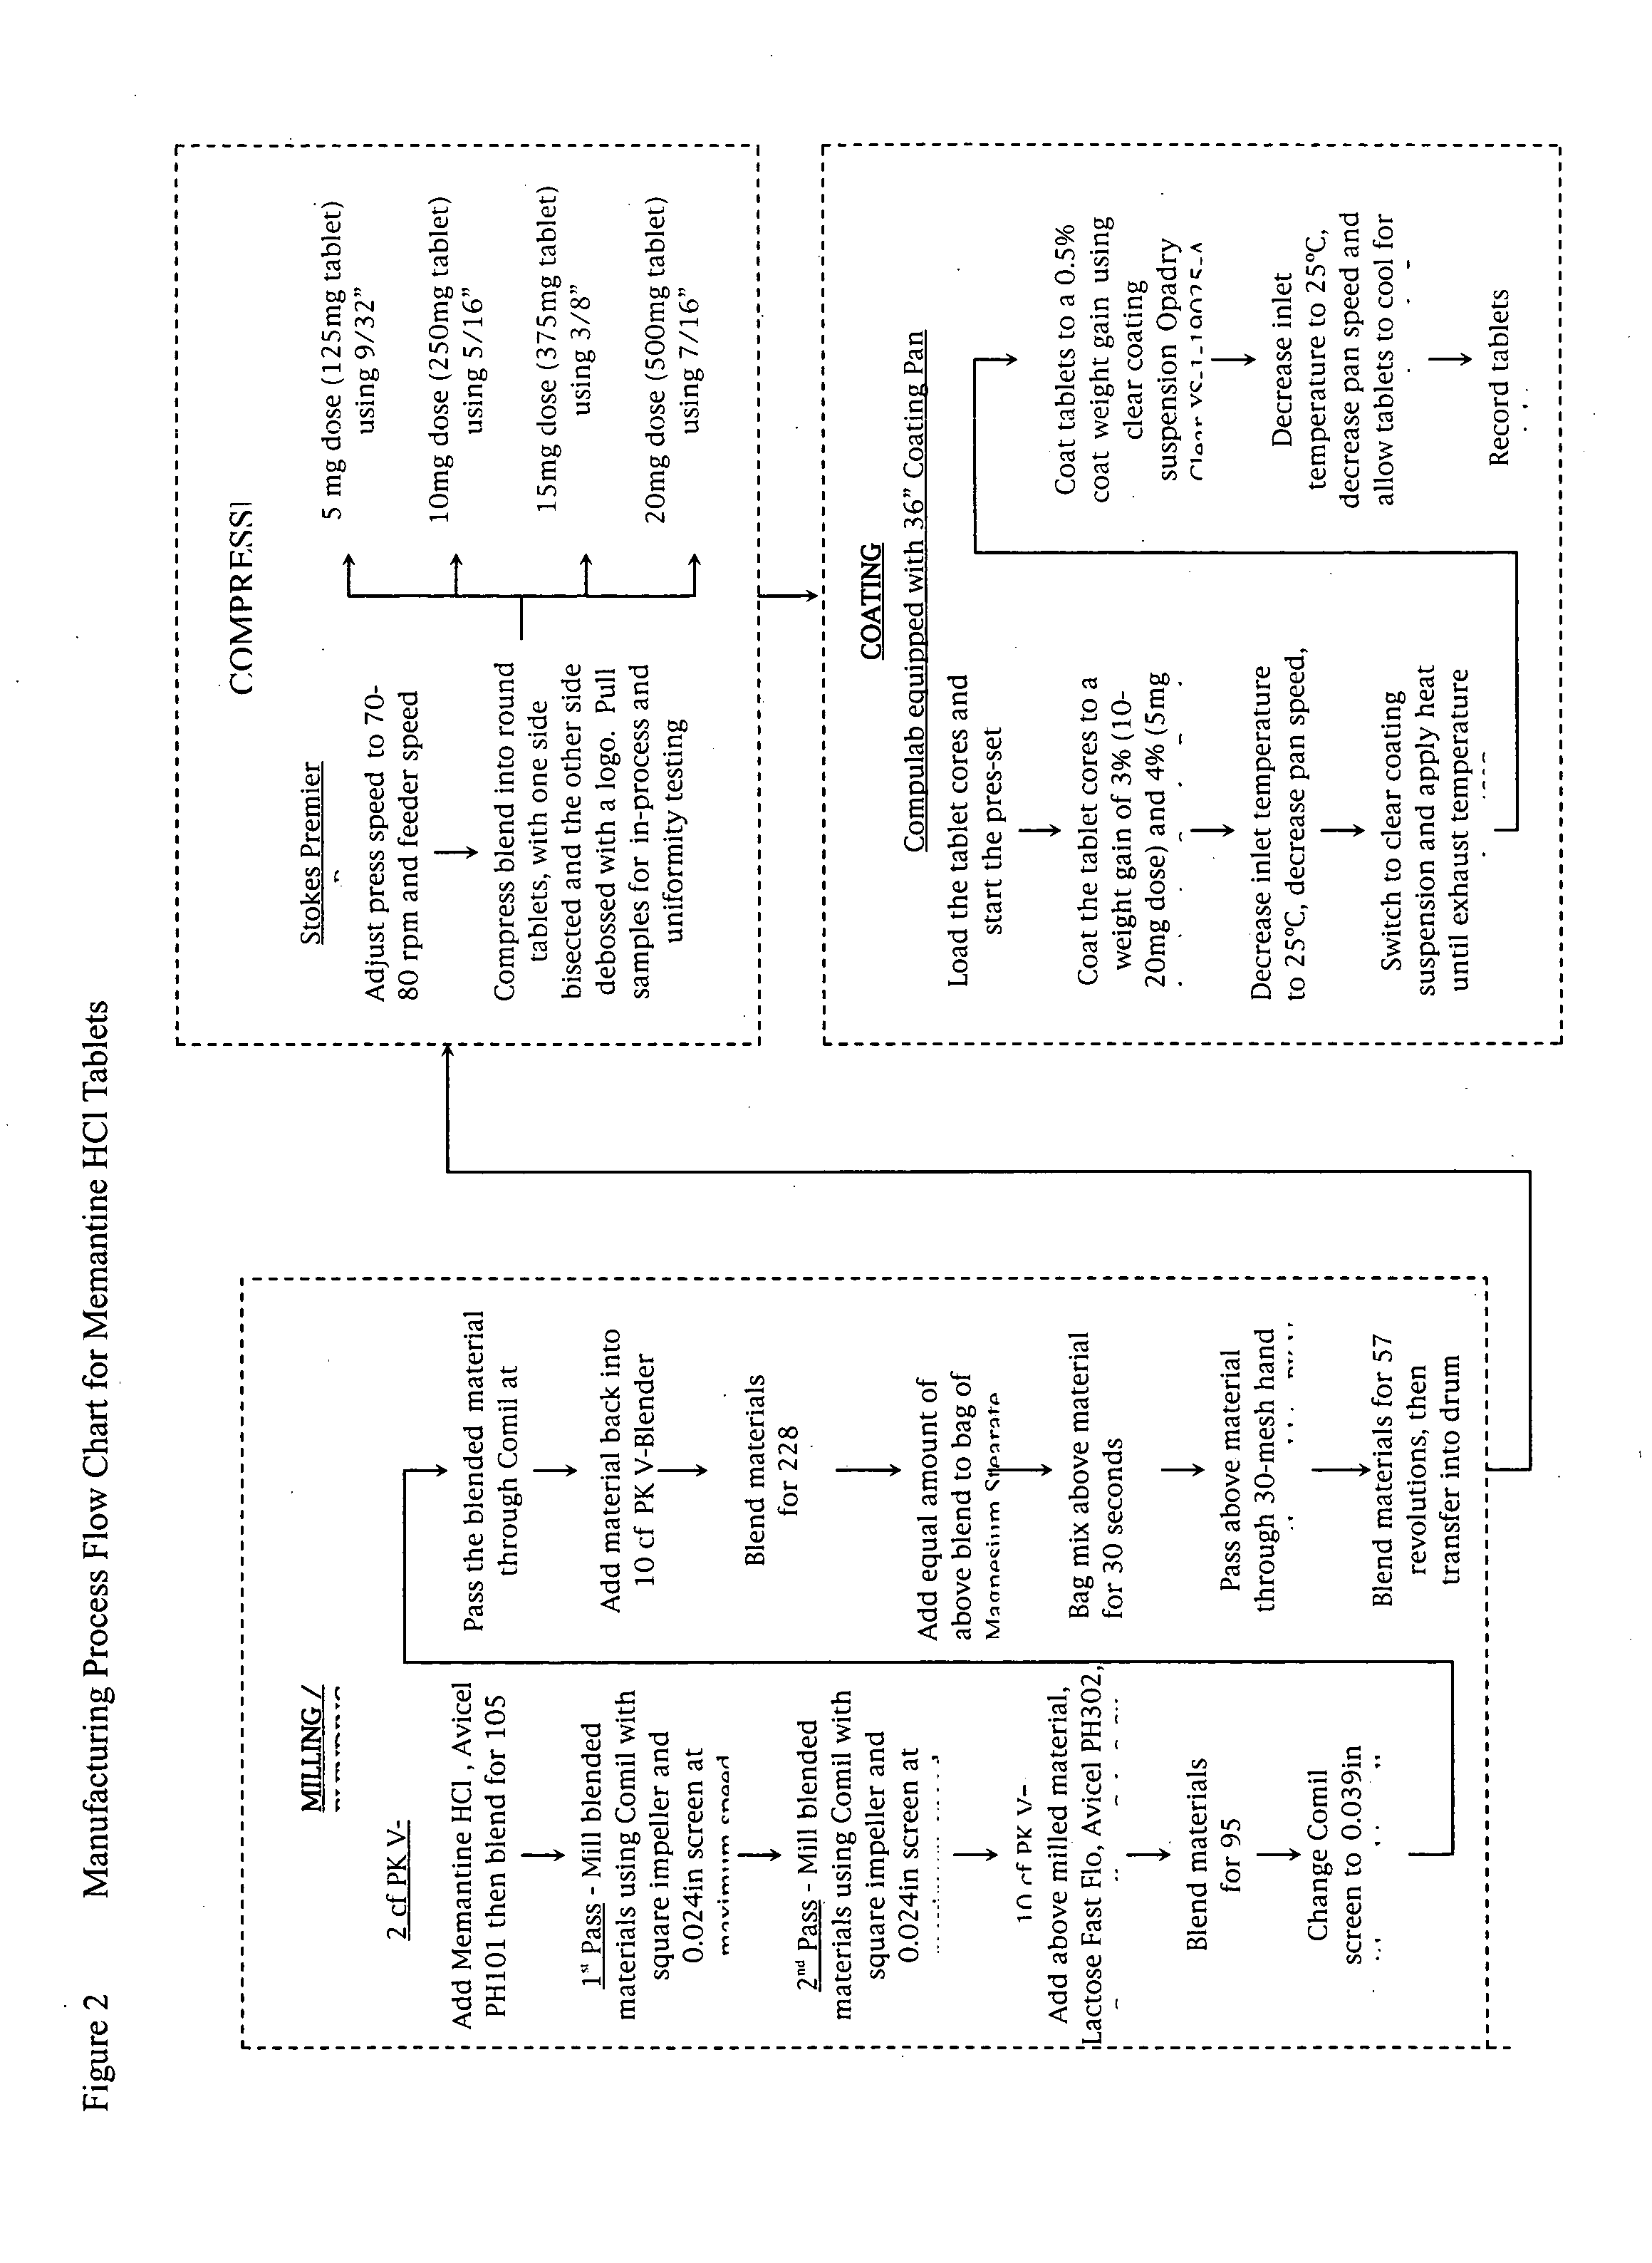 Memantine oral dosage forms